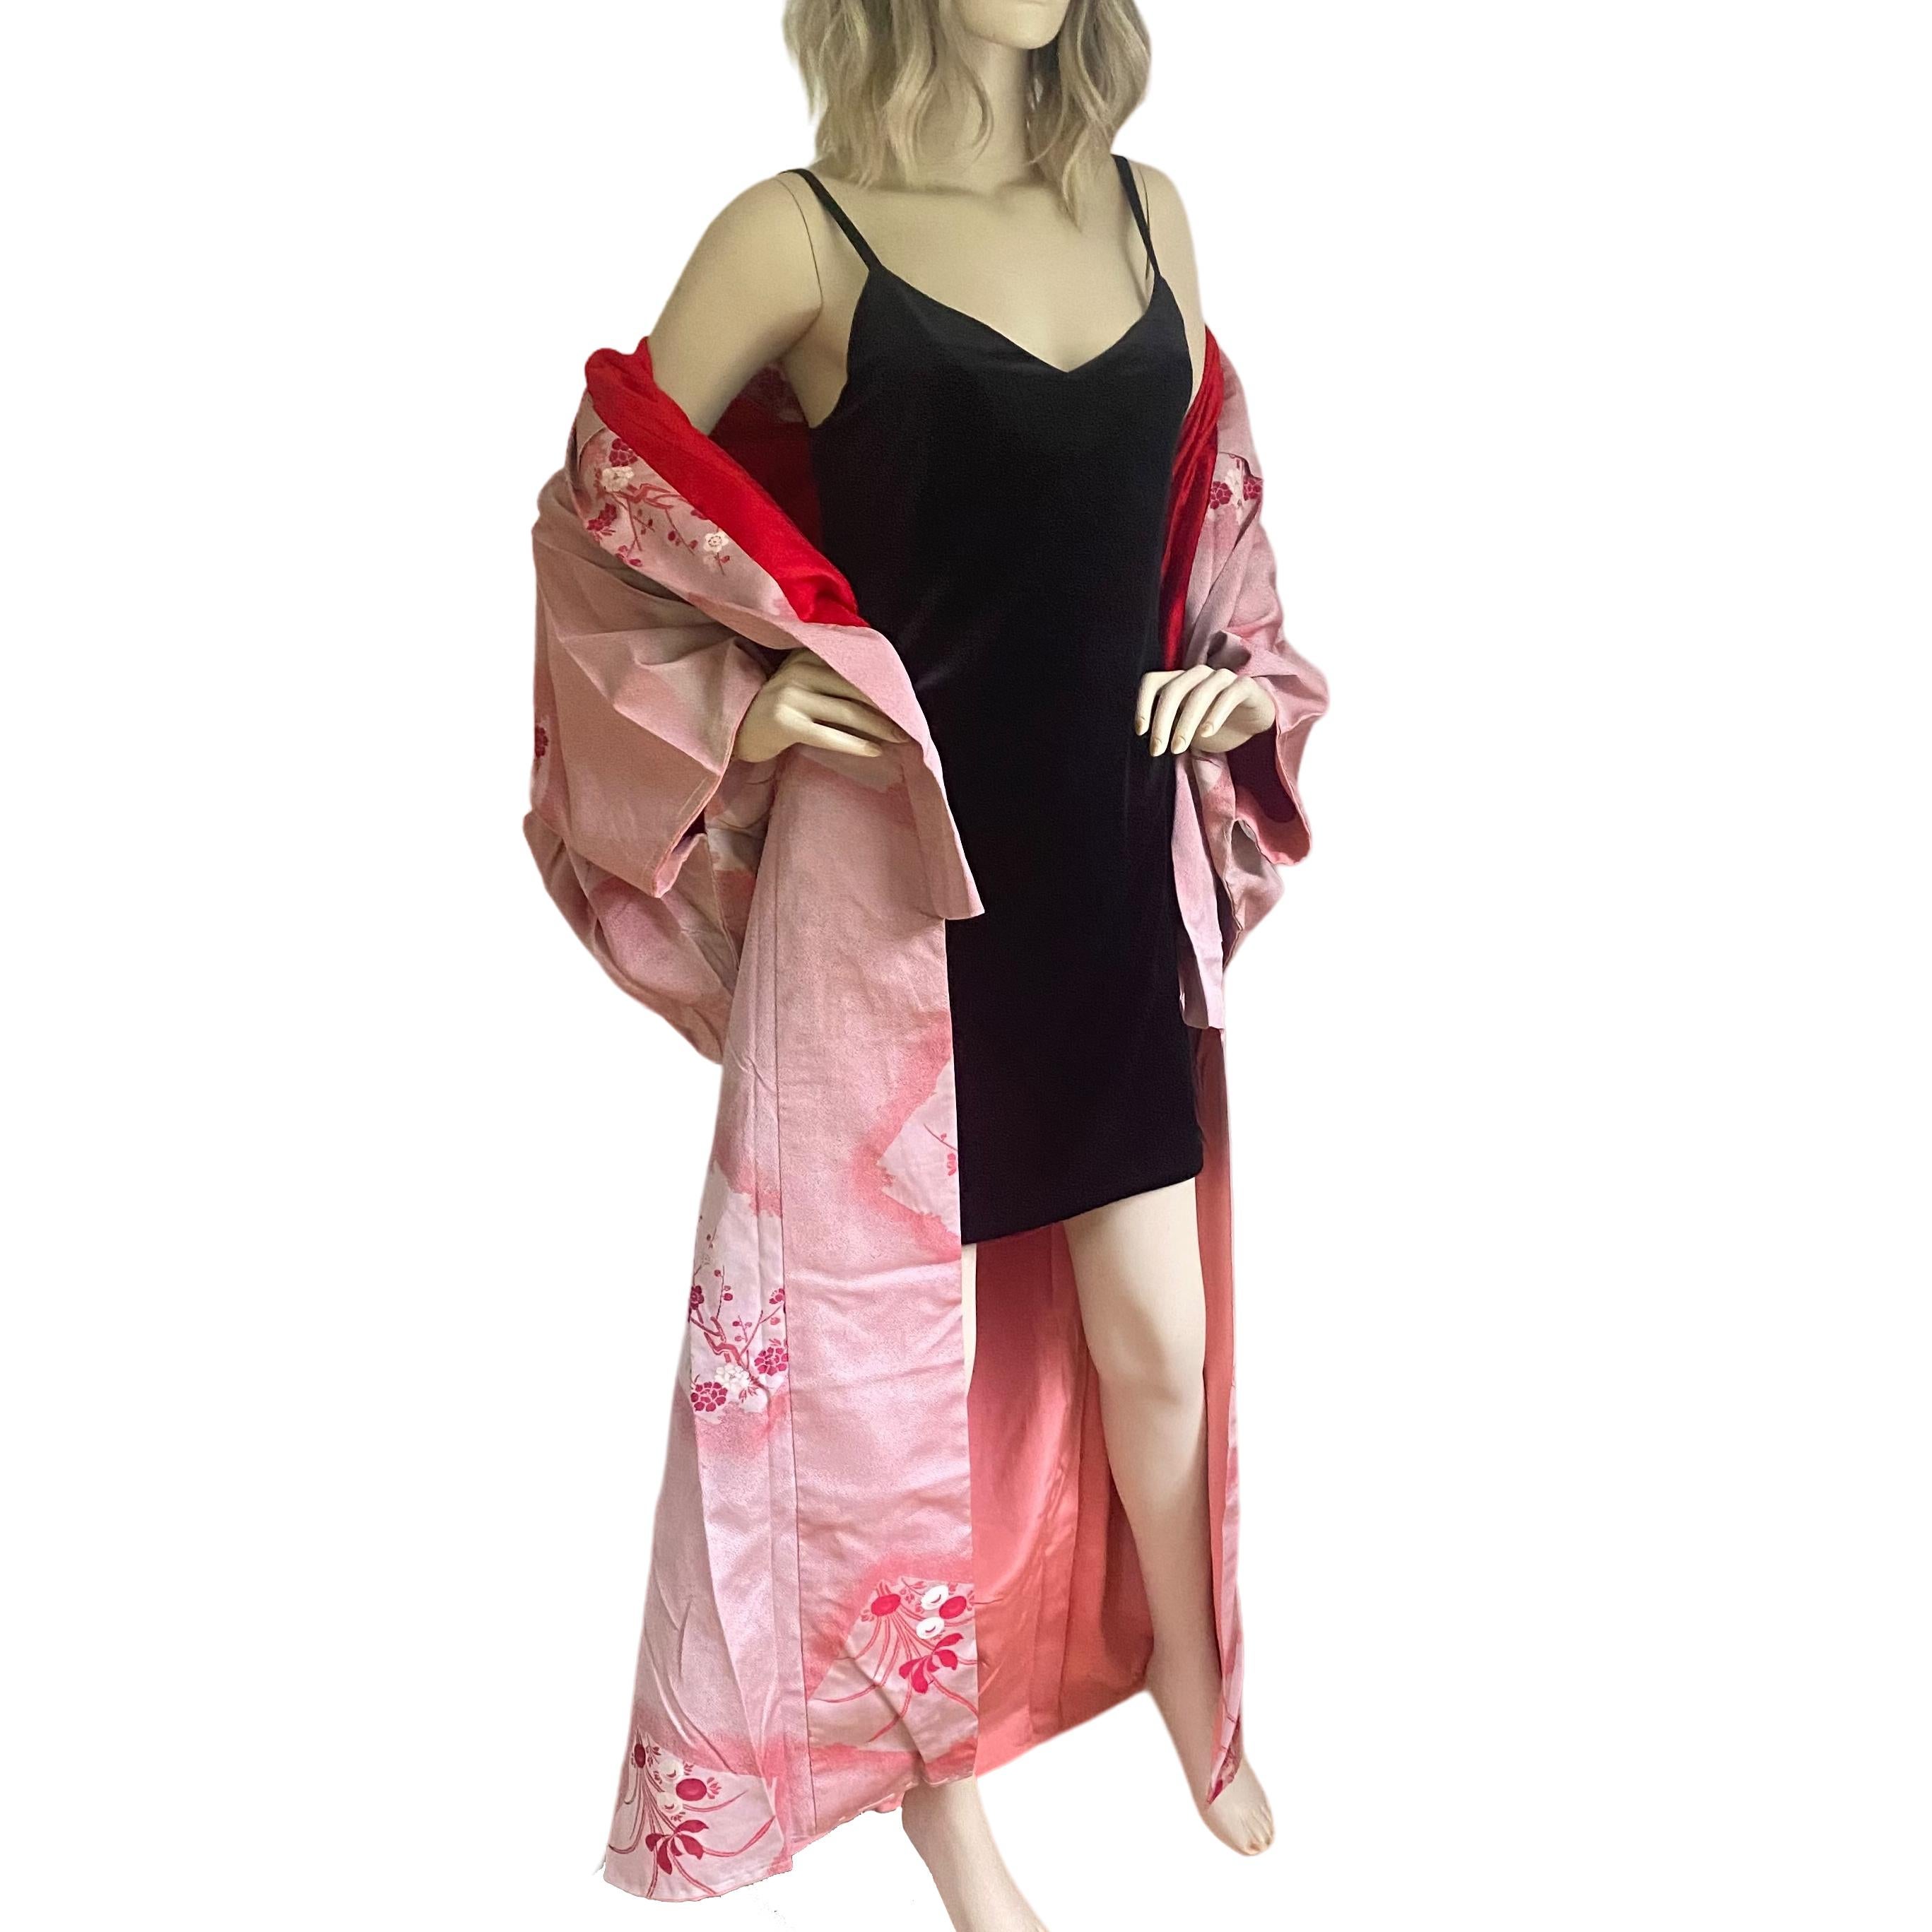 CIRCA: MEIJI Zeitraum 1890
Herkunftsort: Japan
MATERIAL: Substanzieller Seidenbrokat
Zustand: ausgezeichnet.
Der Kimono aus rotem Seidenbrokat ist handgenäht und wird in Japan hergestellt.
Exquisites Design von Sakura (Kirschblüten)-Zweigen  
Rotes